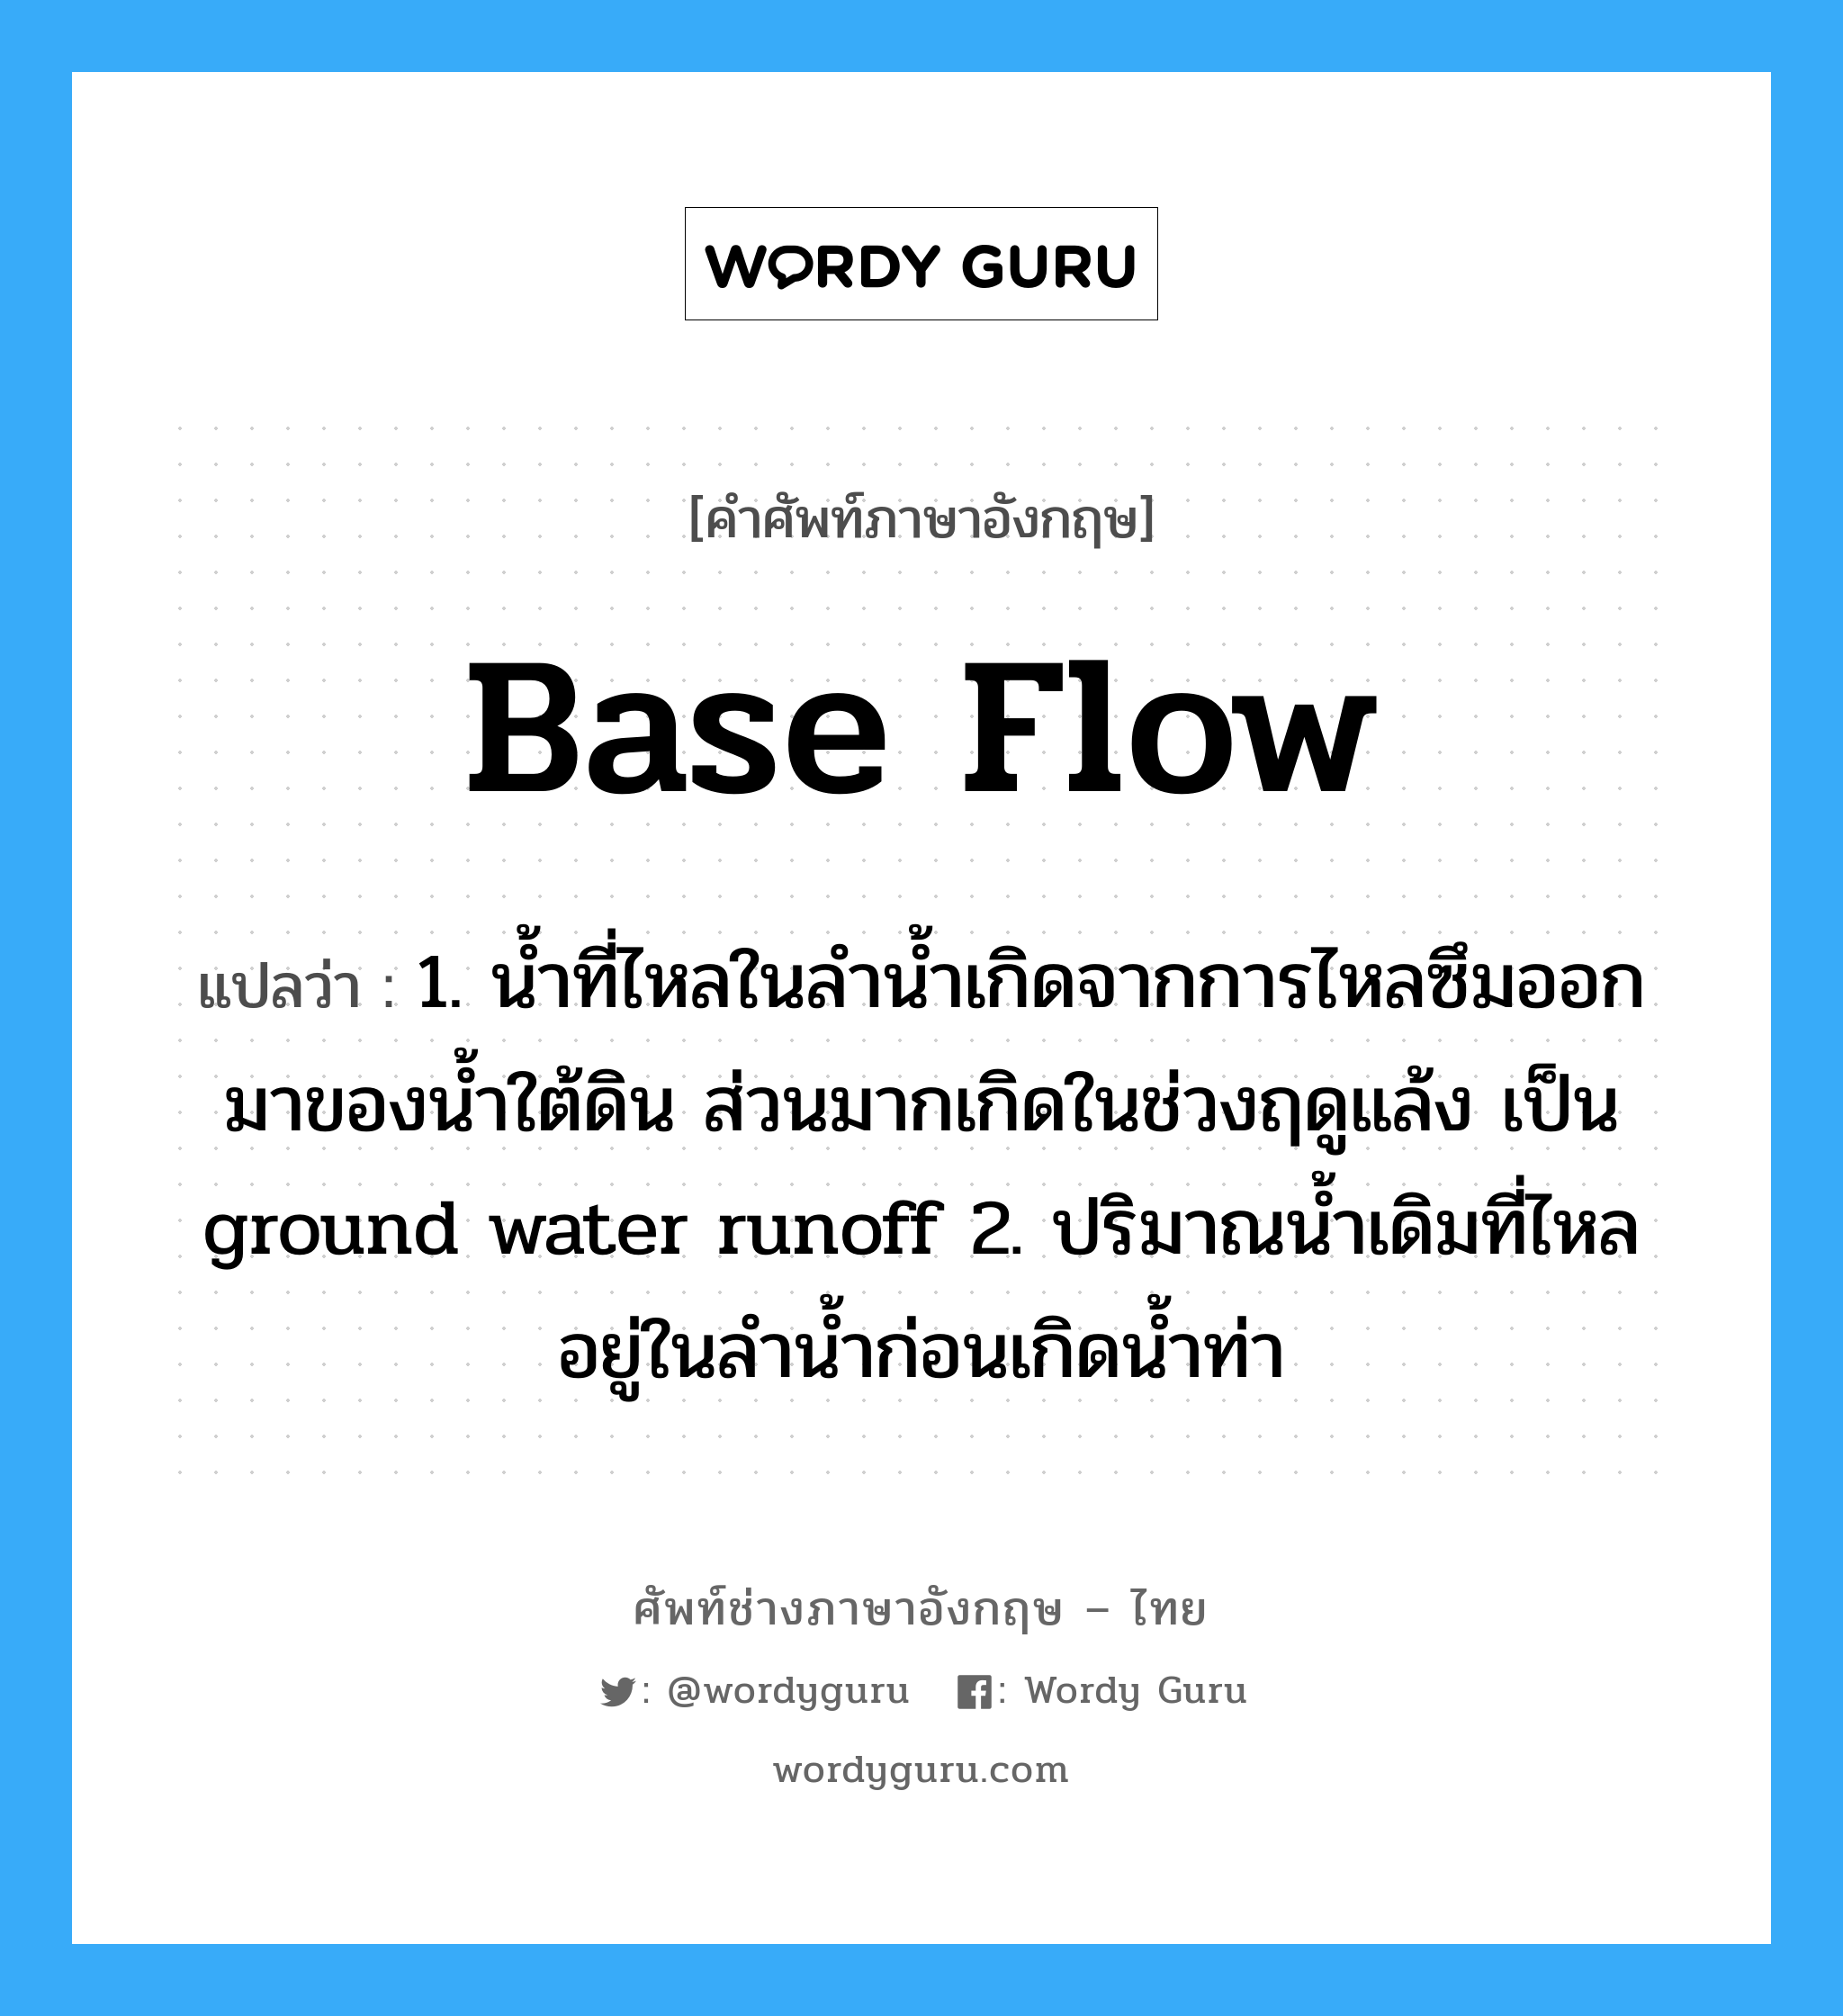 base flow แปลว่า?, คำศัพท์ช่างภาษาอังกฤษ - ไทย base flow คำศัพท์ภาษาอังกฤษ base flow แปลว่า 1. น้ำที่ไหลในลำน้ำเกิดจากการไหลซึมออกมาของน้ำใต้ดิน ส่วนมากเกิดในช่วงฤดูแล้ง เป็น ground water runoff 2. ปริมาณน้ำเดิมที่ไหลอยู่ในลำน้ำก่อนเกิดน้ำท่า